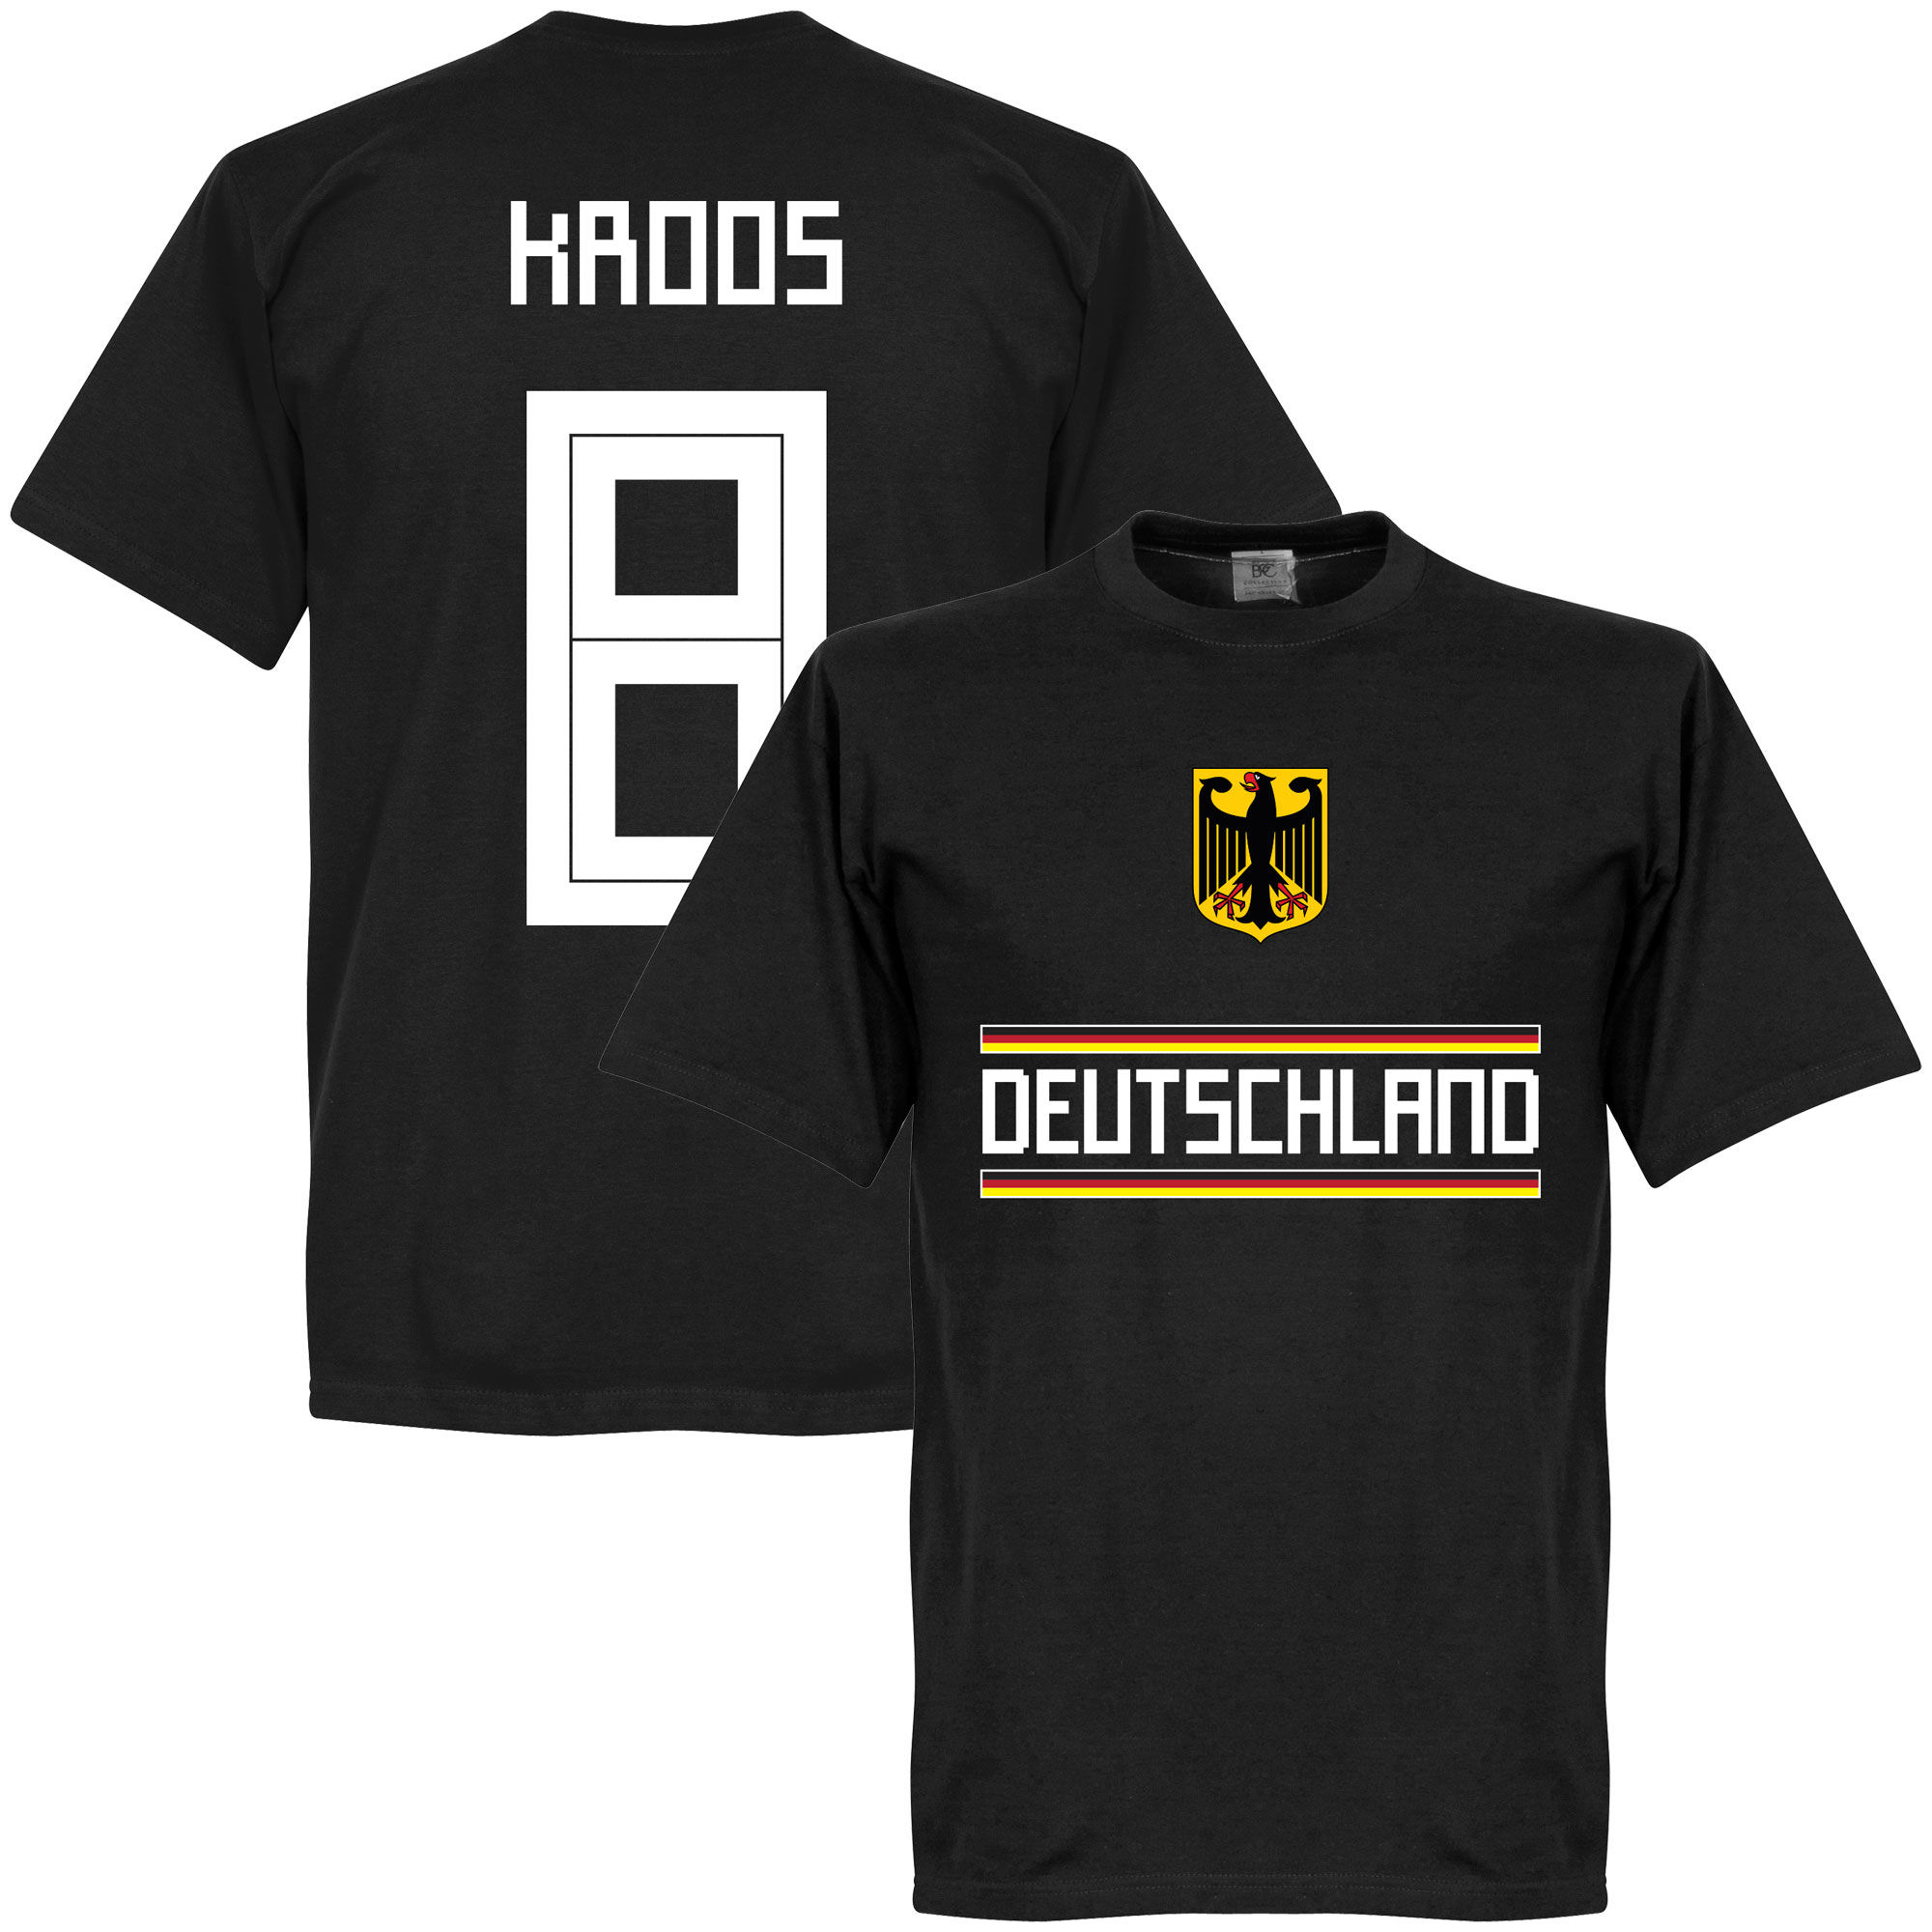 Německo - Tričko - Toni Kroos, číslo 8, černé